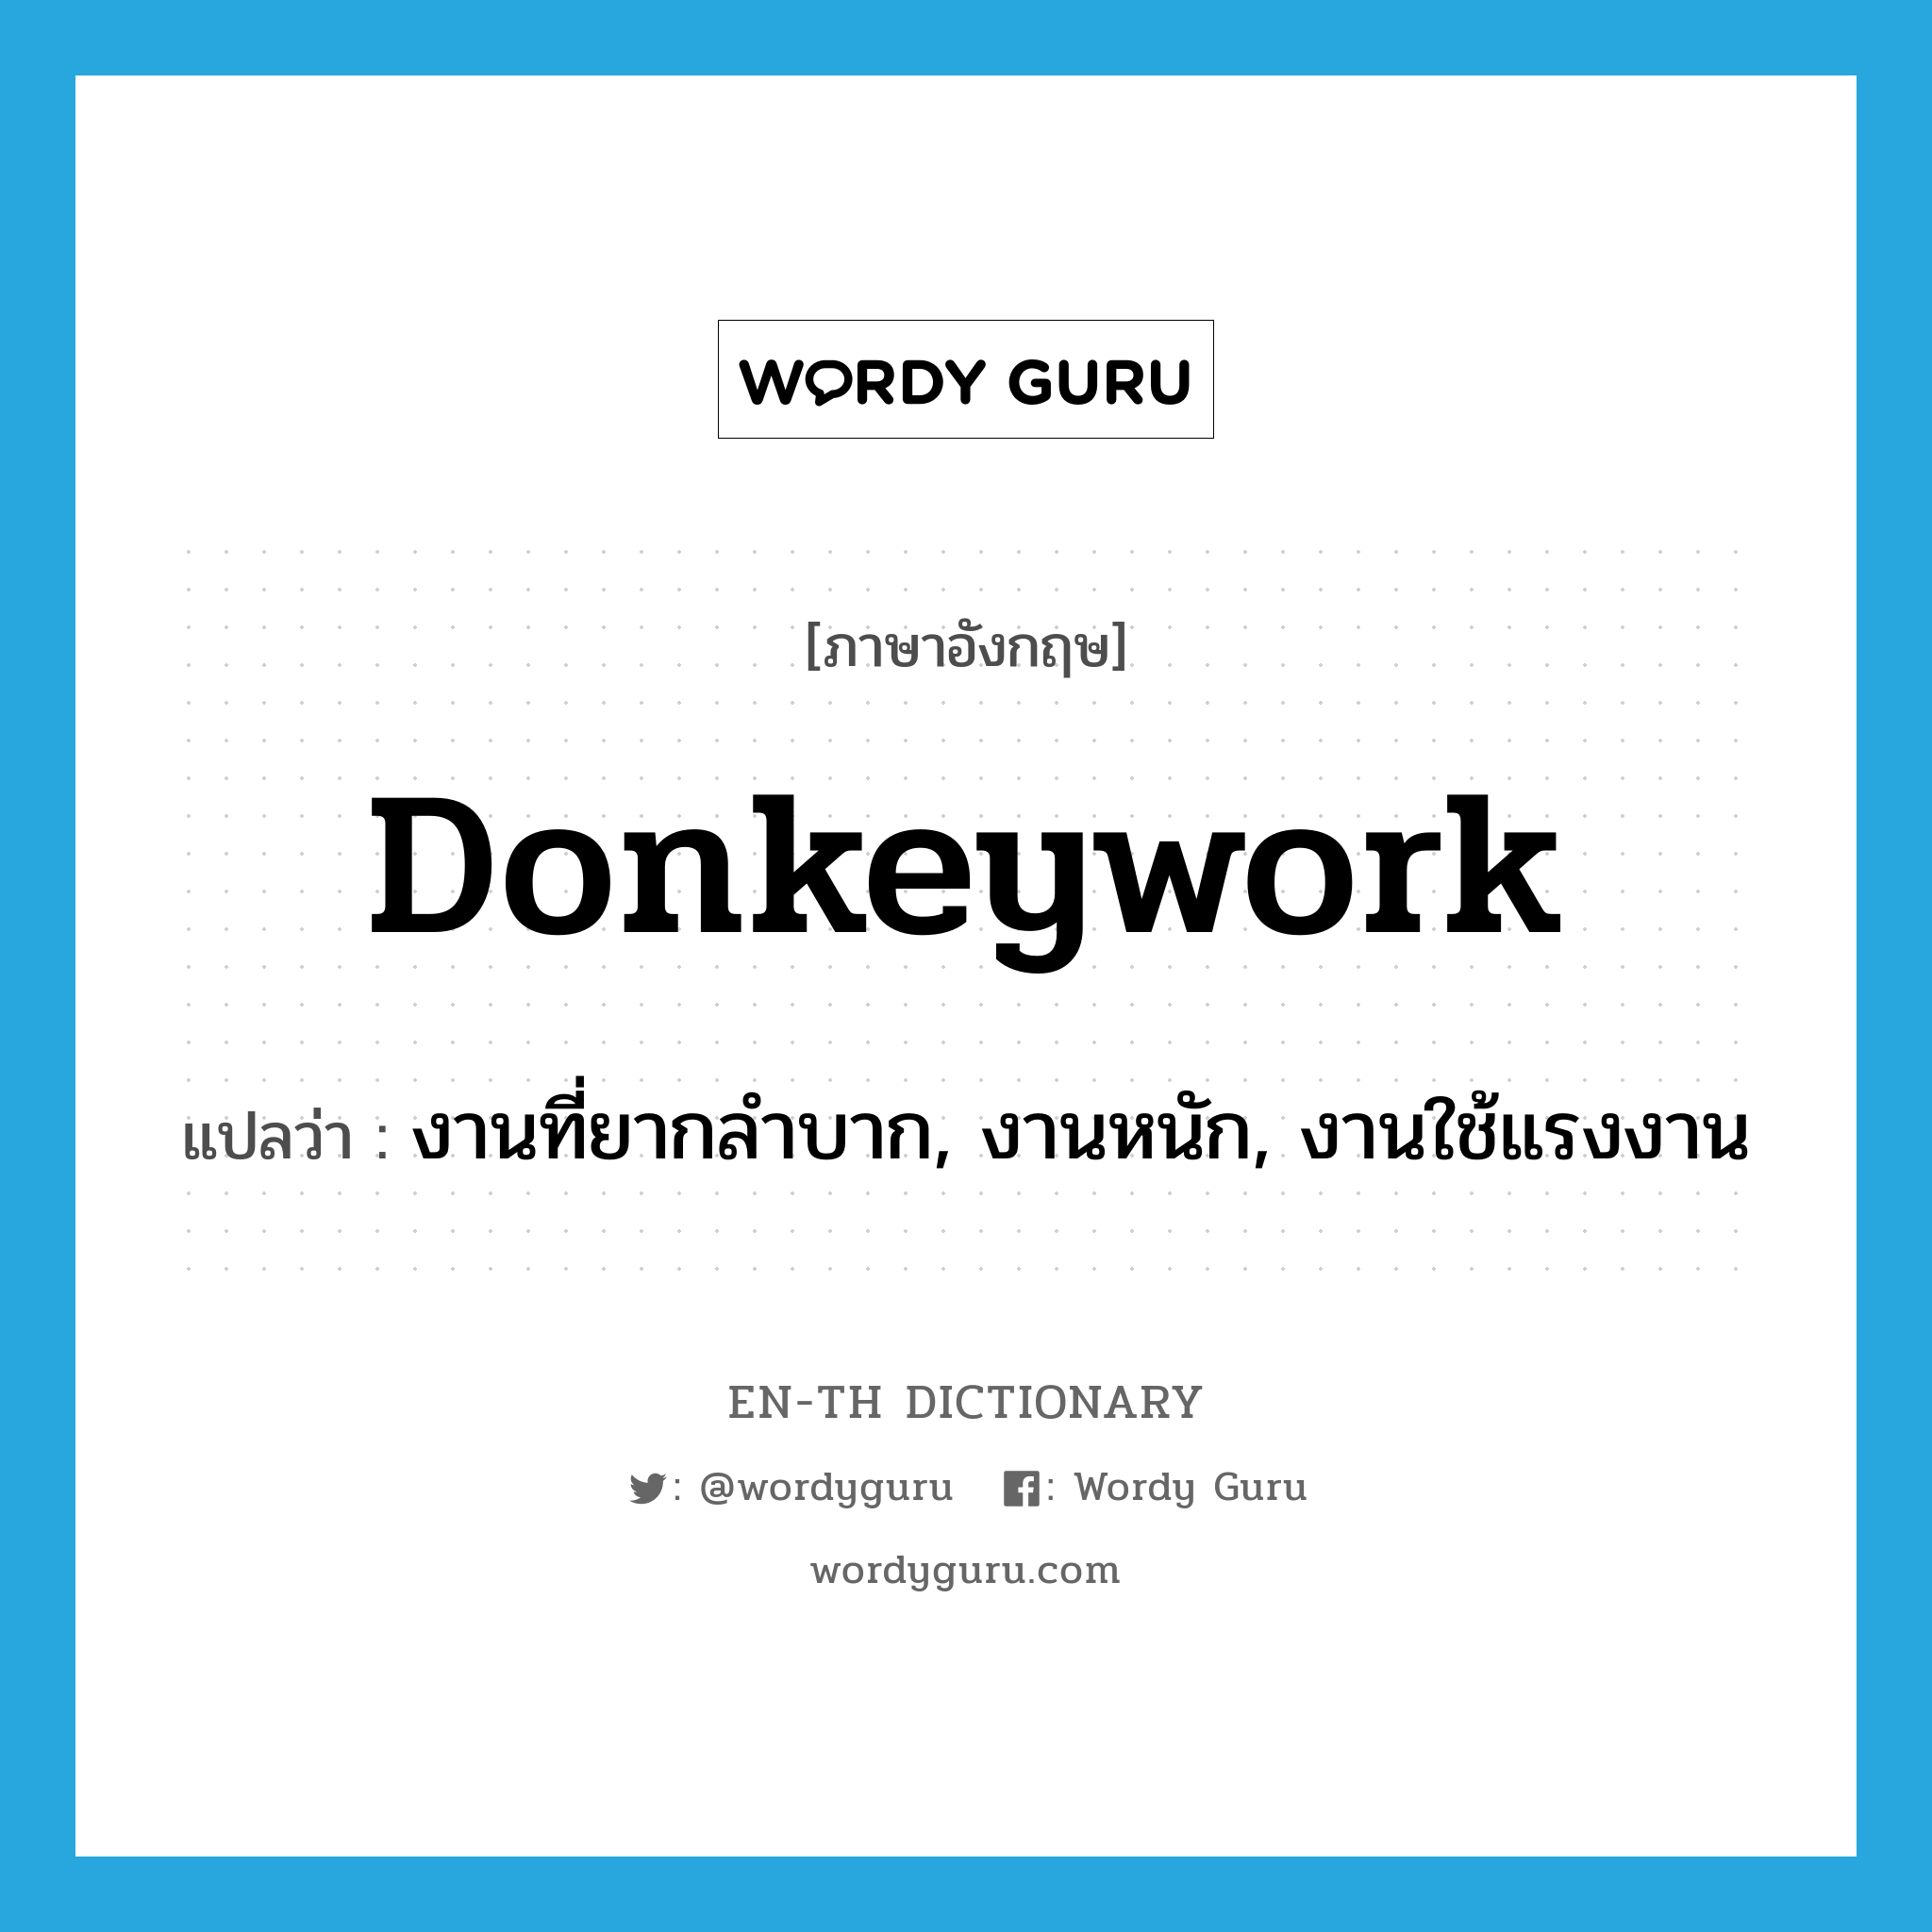 donkeywork แปลว่า?, คำศัพท์ภาษาอังกฤษ donkeywork แปลว่า งานที่ยากลำบาก, งานหนัก, งานใช้แรงงาน ประเภท N หมวด N